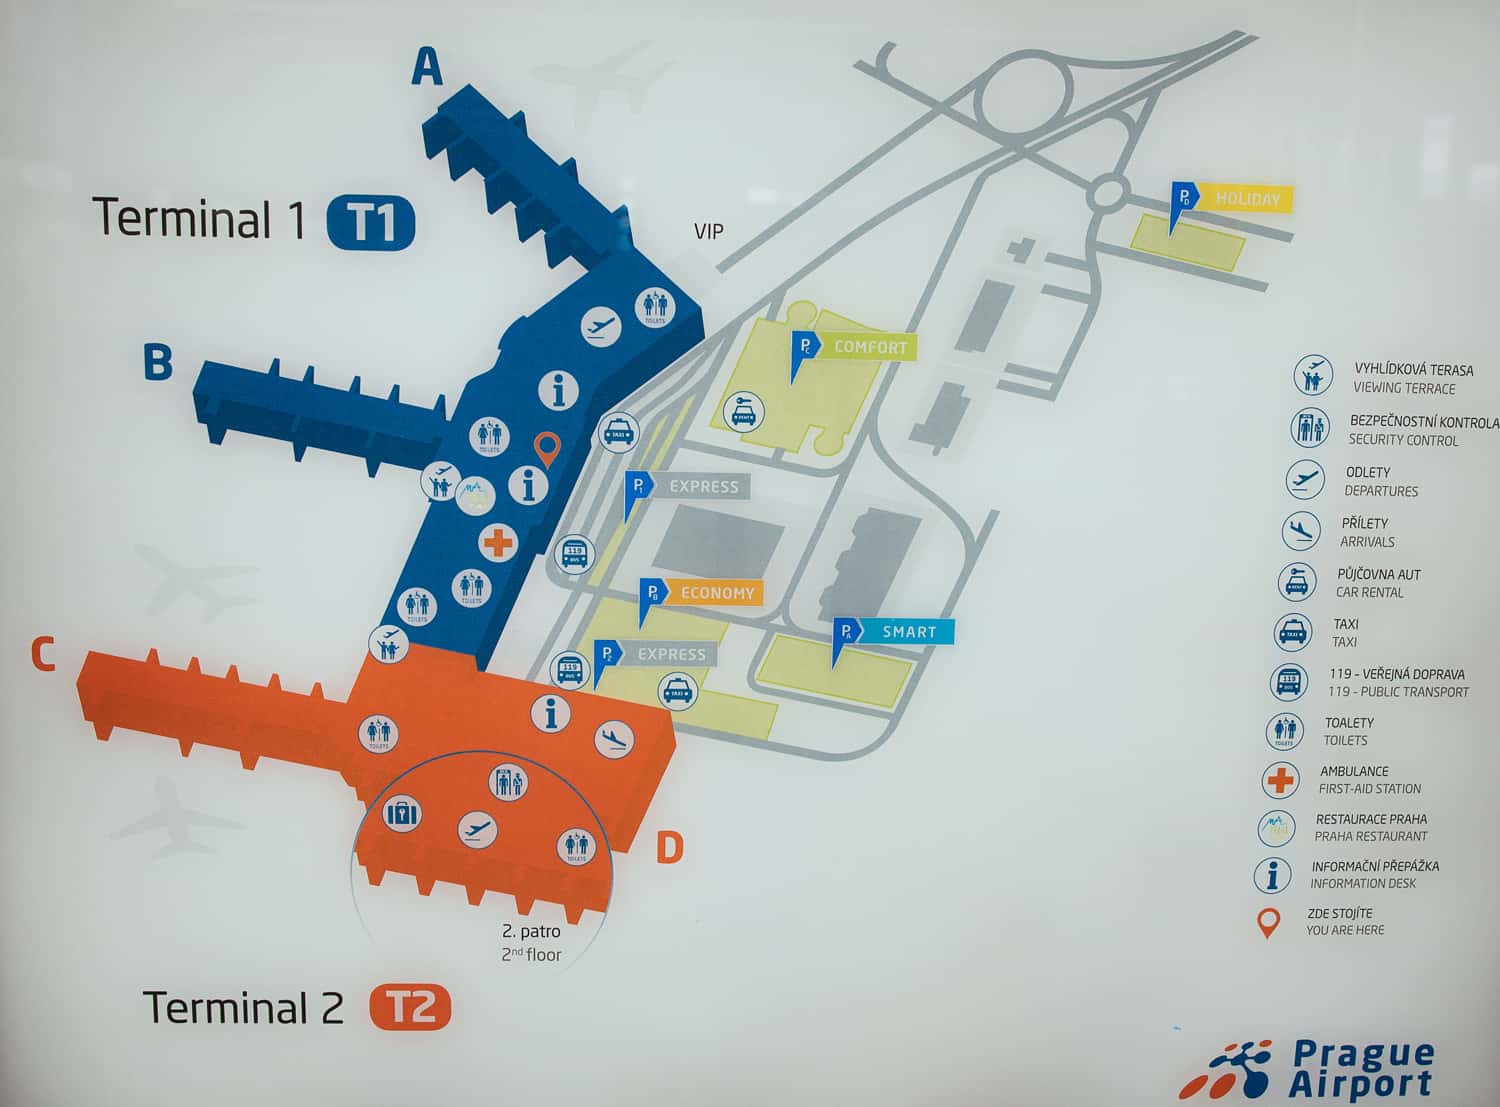 Аэропорт праги имени вацлава гавела «рузыне». онлайн-табло прилетов и вылетов, схема аэропорта, расписание рейсов, как добраться, отели — туристер.ру